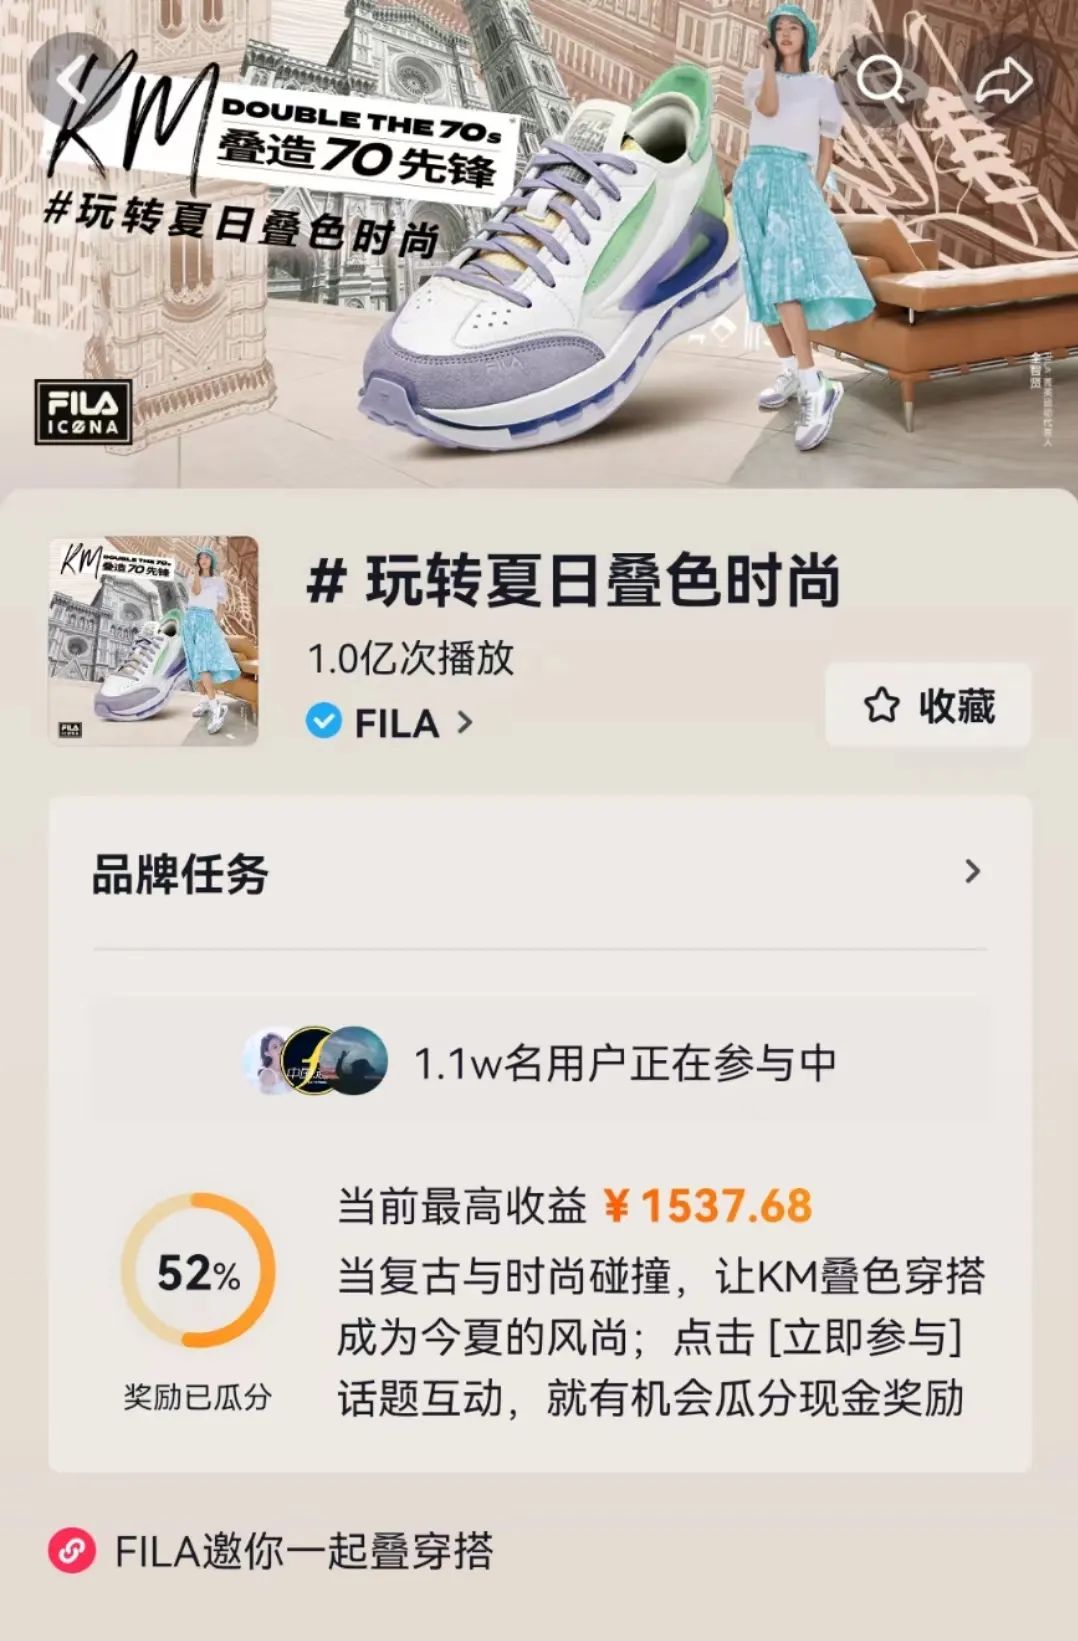 抖音电商七夕品牌营销分析：「周生生」如何引爆“甜蜜经济”？